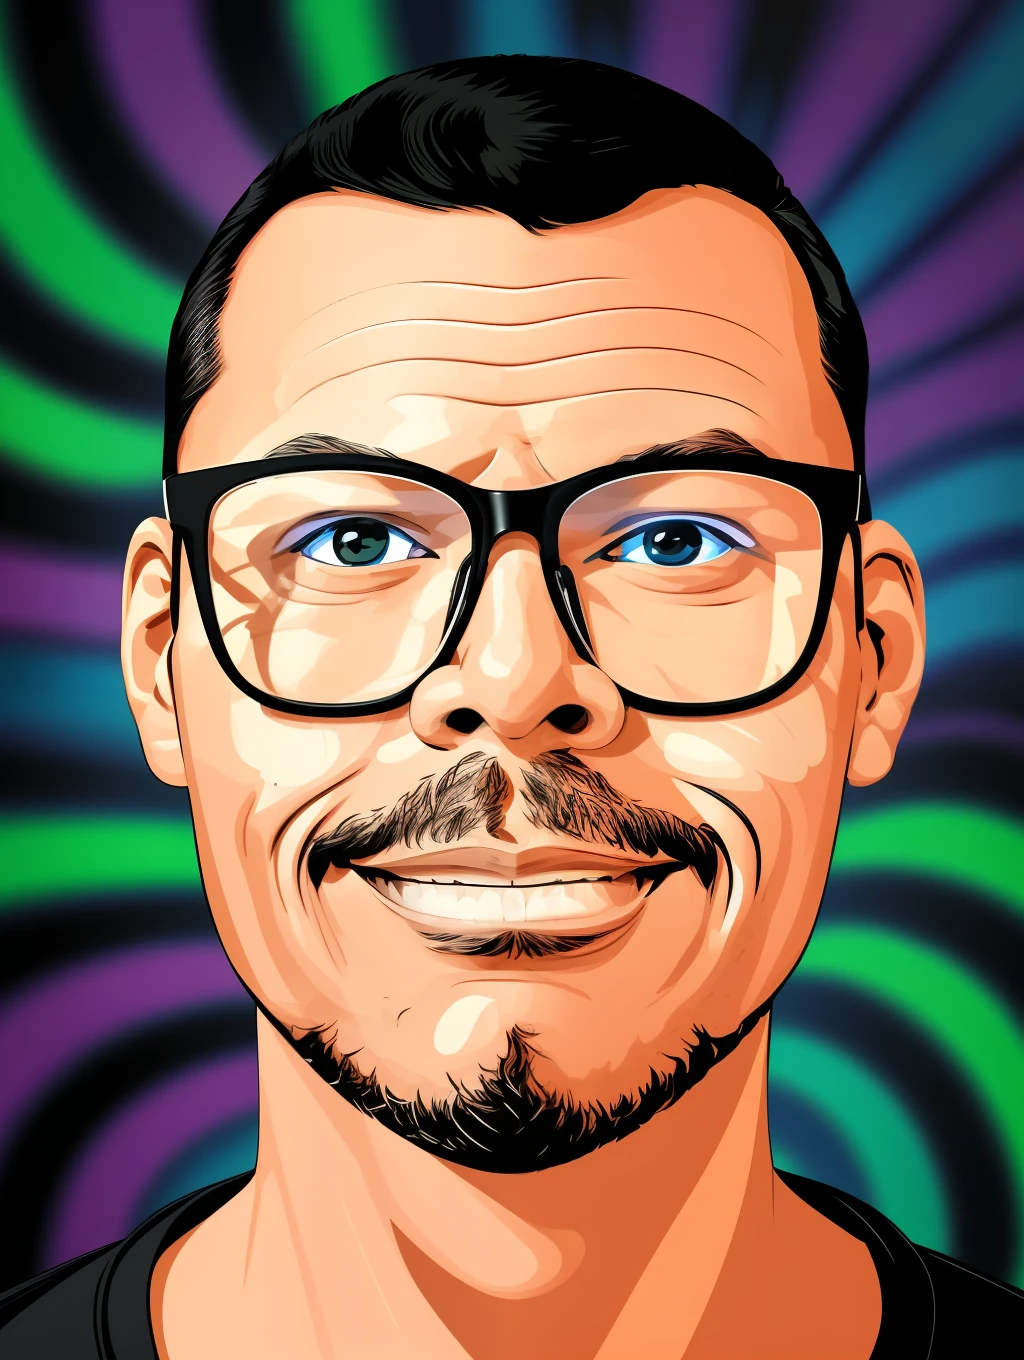 GuttonerdVision4, retrato na ilustração de um homem de óculos, leve sorriso. Ilustração em traços de estilo de quadrinhos, com traços de contorno preto. Cenário psicodélico com desfoque